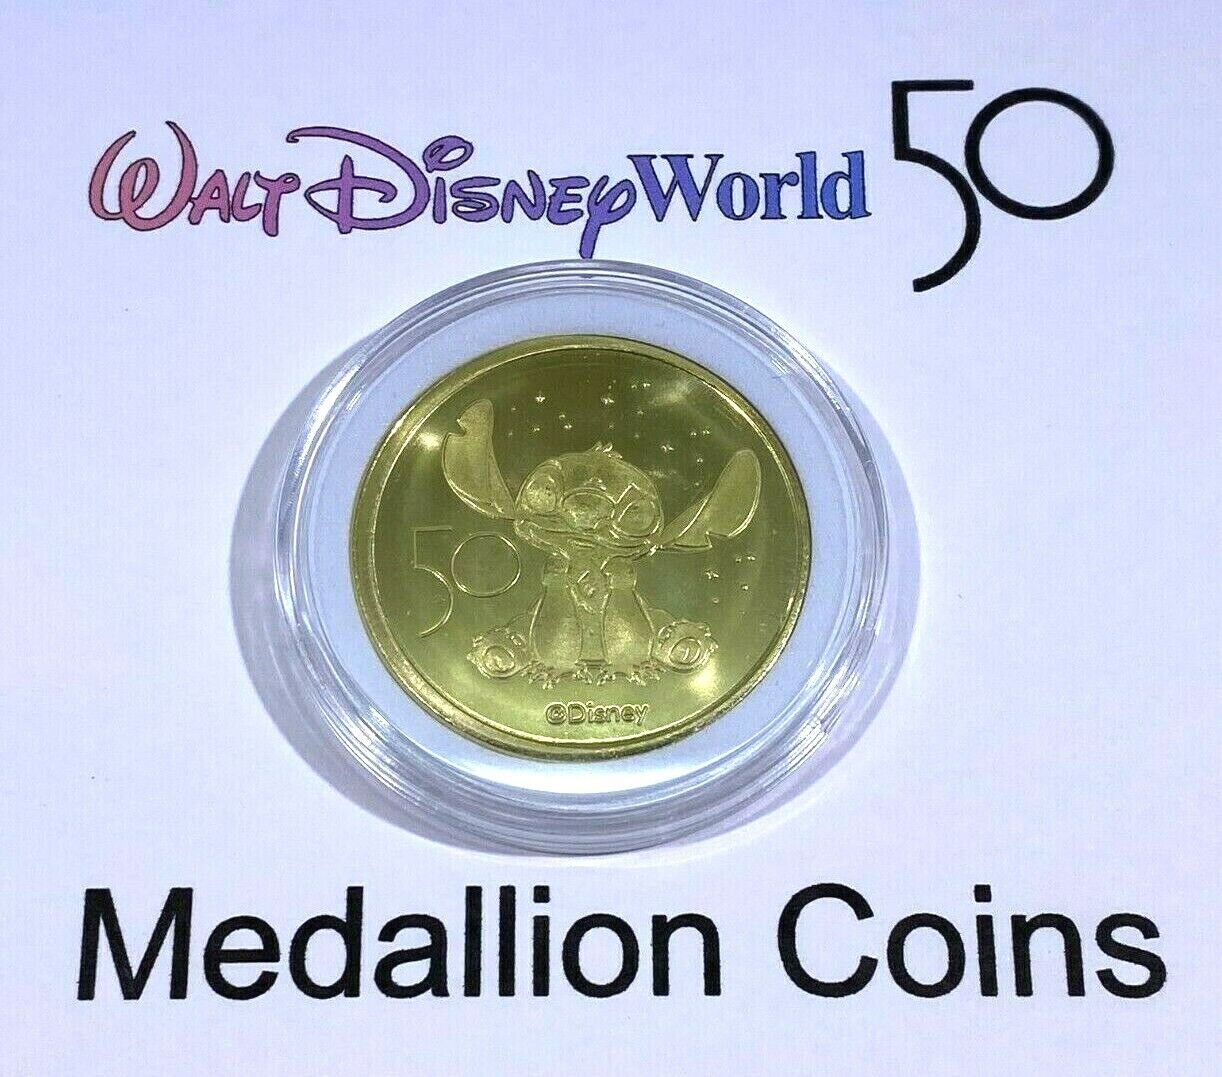 Stitch Disney World 50th Anniversary Commemorative Medallion Coin in Case